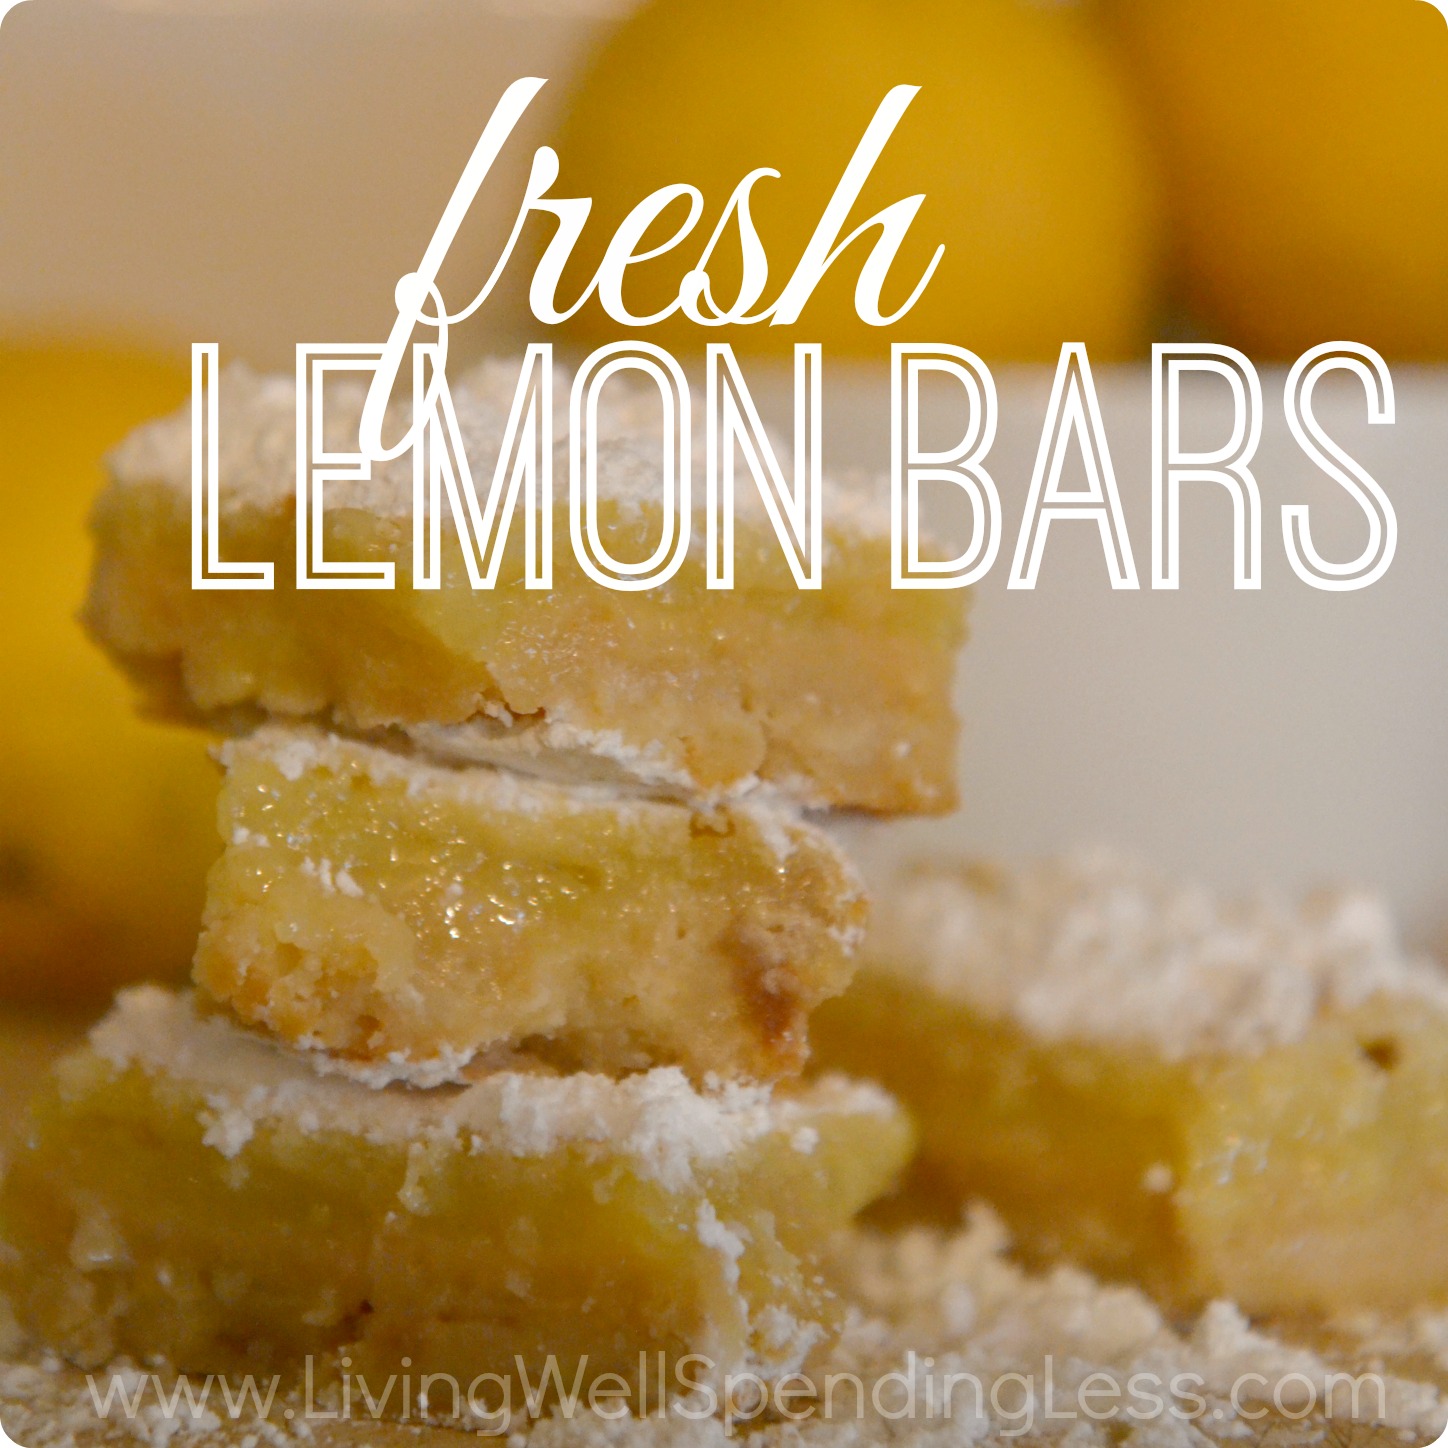 Fresh Lemon Bars - Living Well Spending Less®